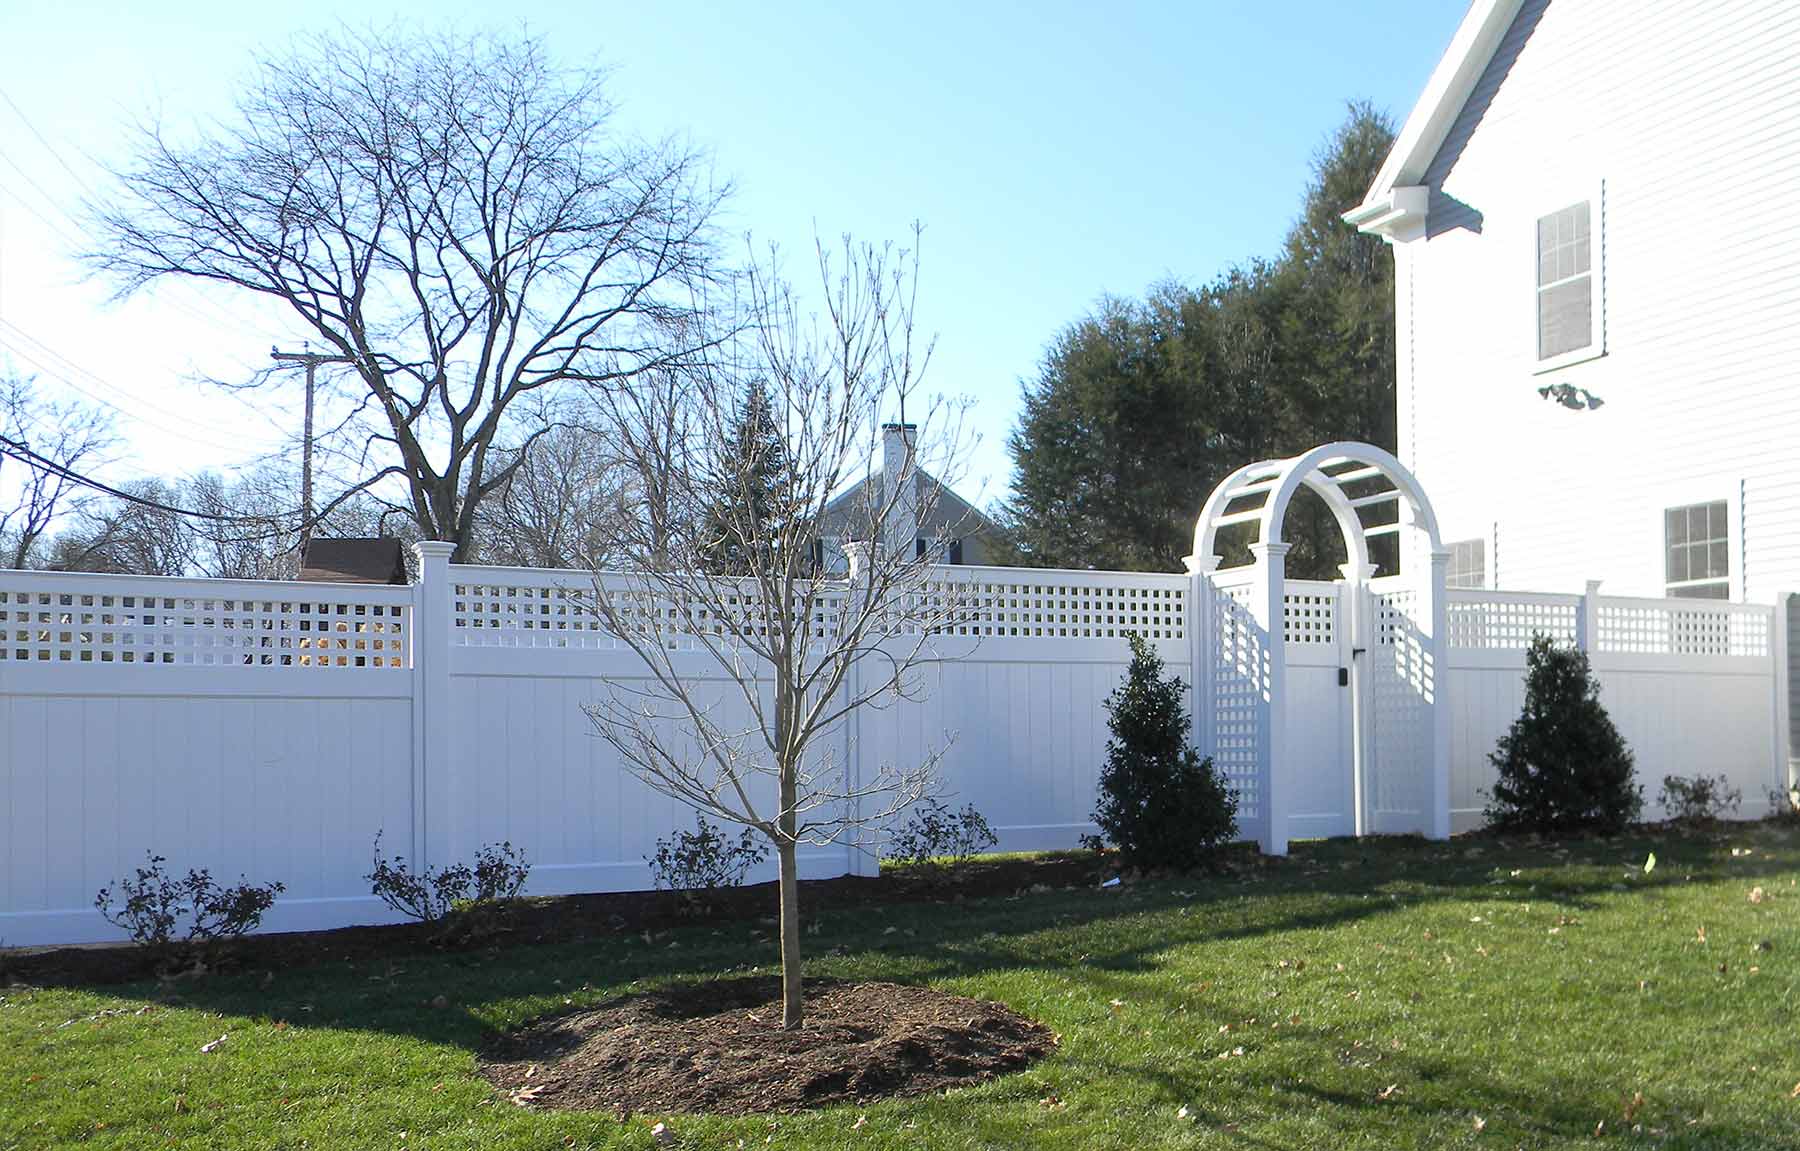 Fence Installation in Foxboro, Massachusetts - Bottom 4